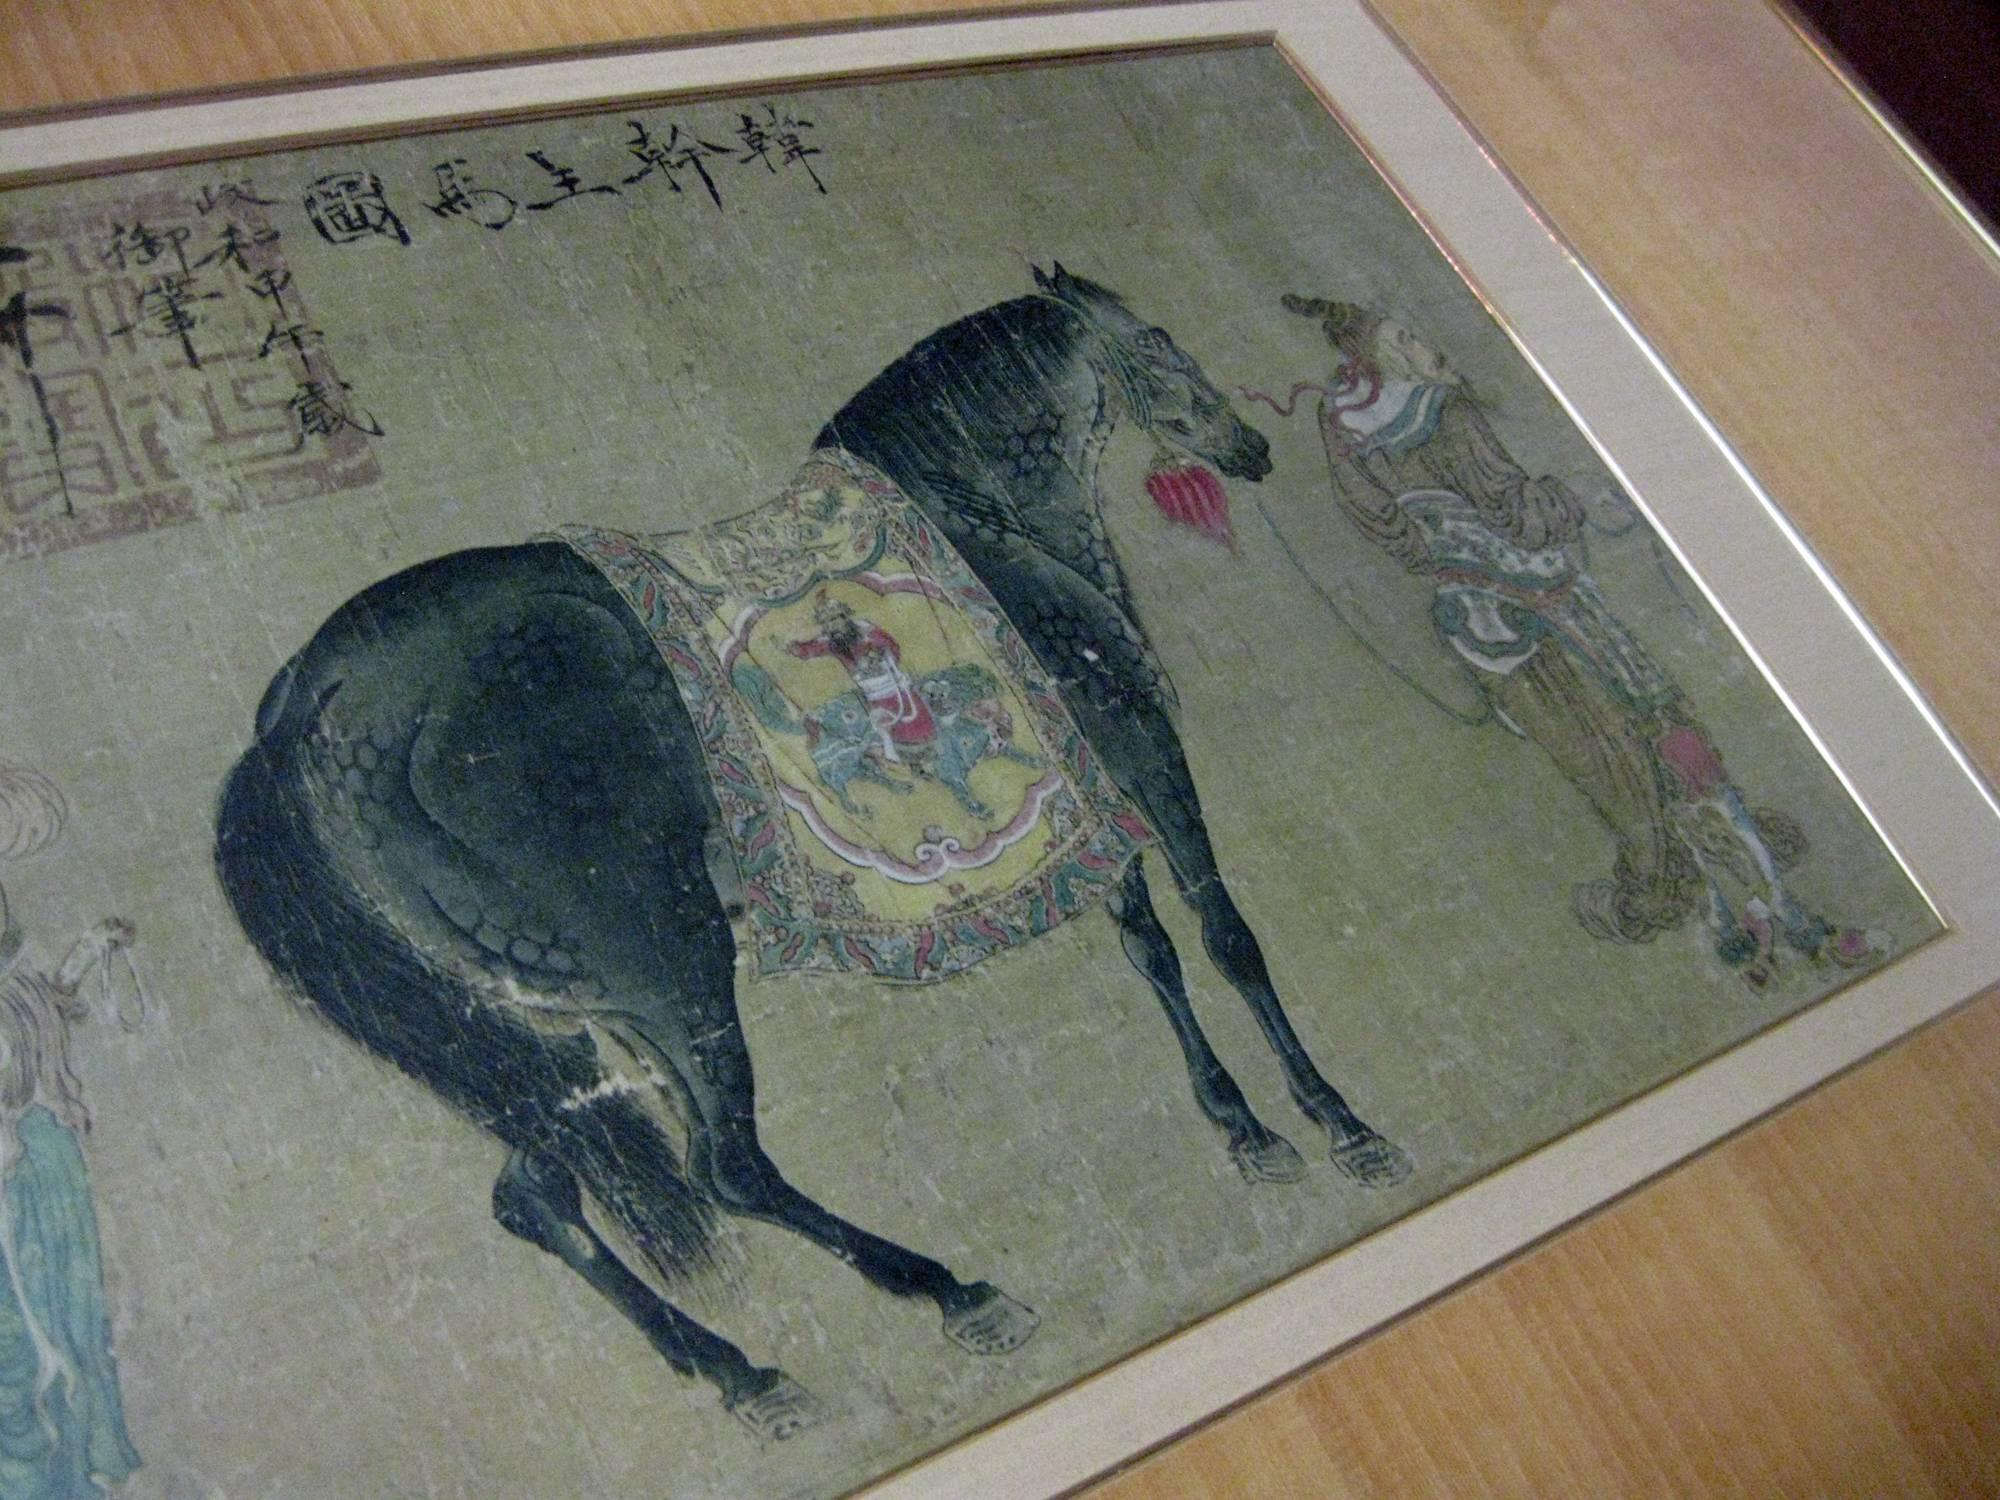 Chinesischer gerahmter Druck, Detail eines größeren Gemäldes. Fachmännisch gerahmt mit doppelten Passepartouts aus Leinen und simuliertem Bambus mit Blattgoldeinfassung auf beiden Passepartouts.
